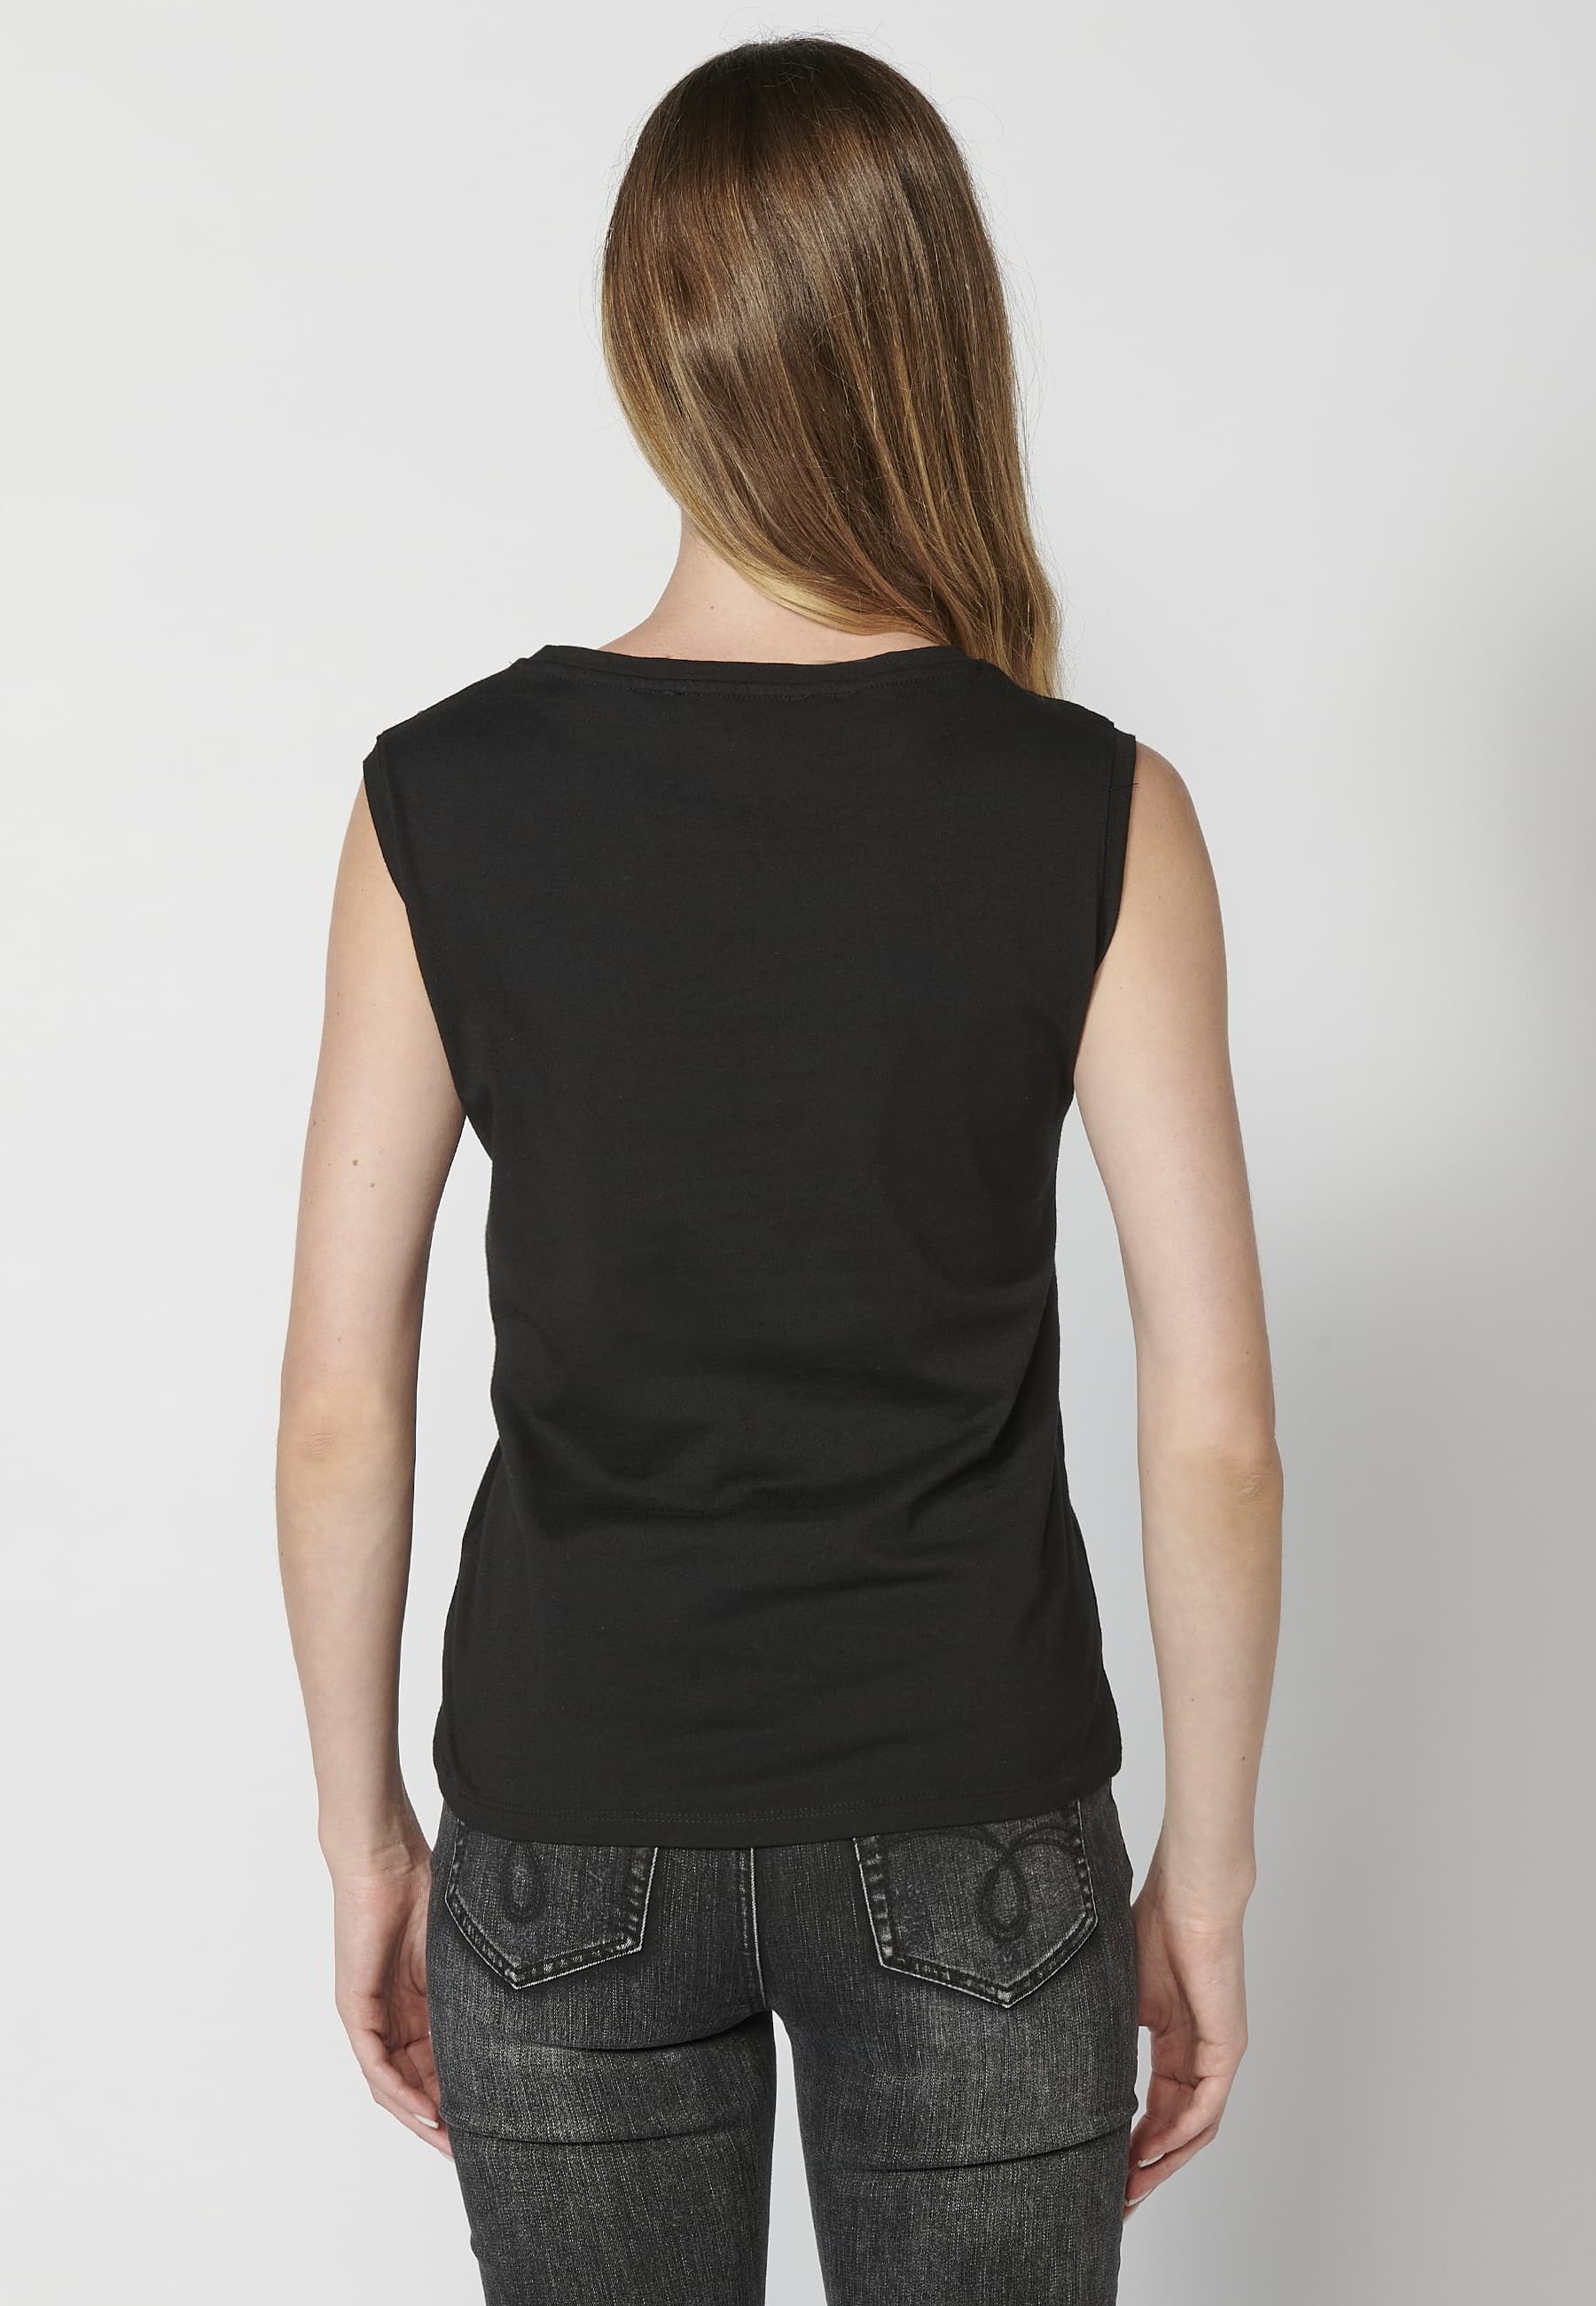 Camiseta top sin mangas de algodón cuello redondo estampado floral color negro para mujer 4